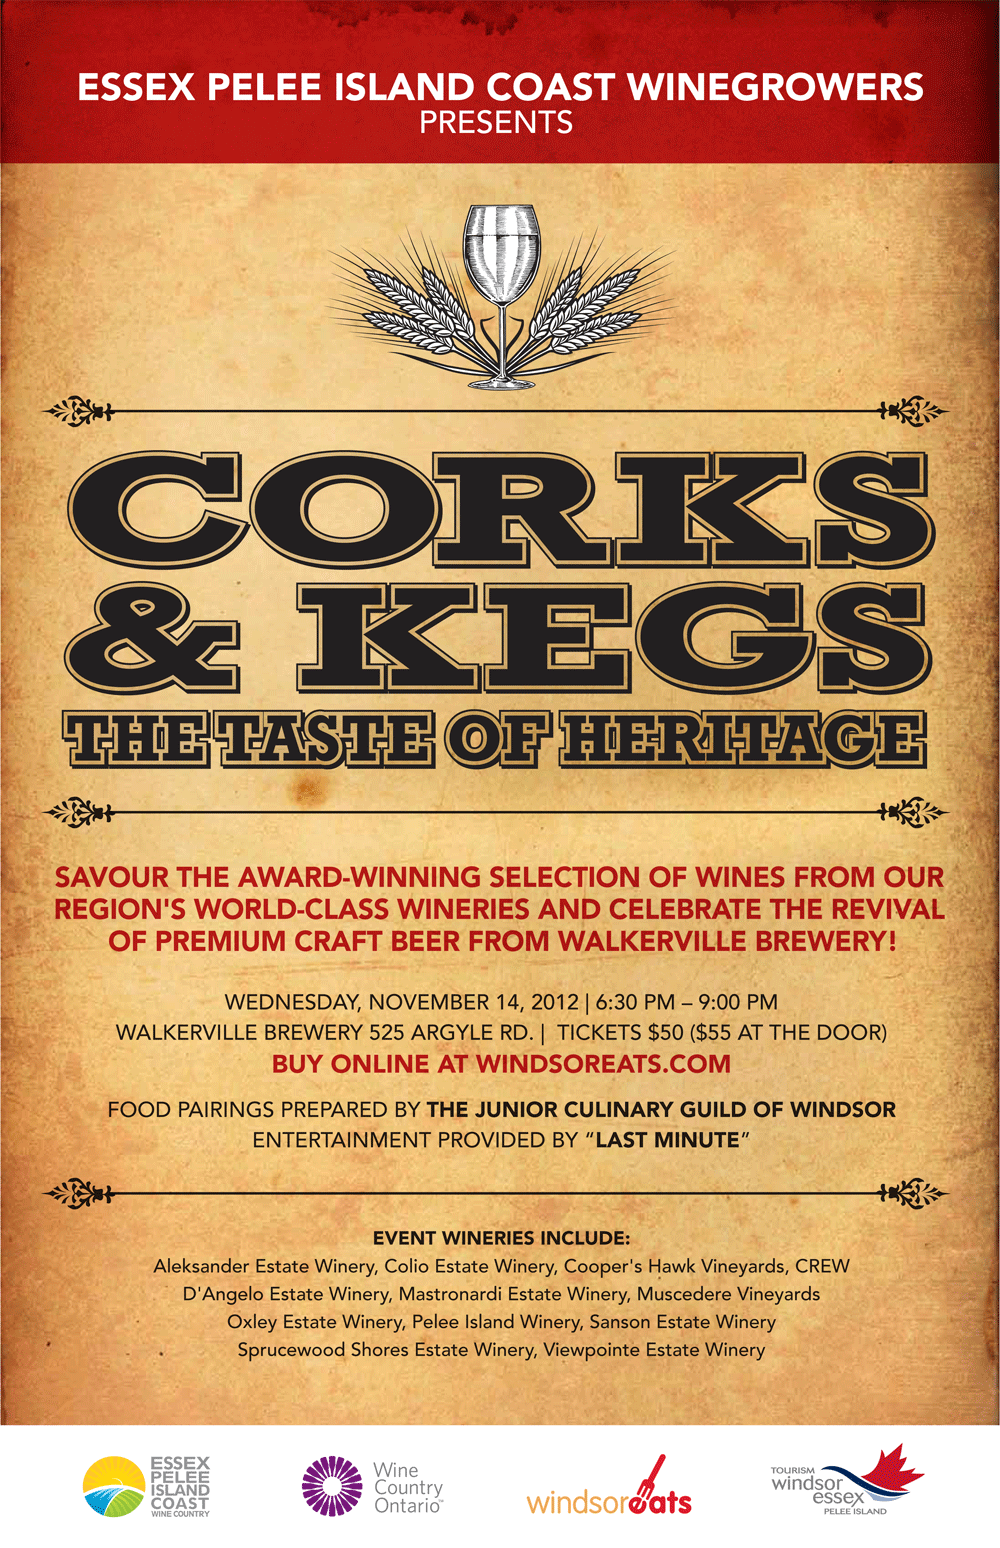 Corks & Kegs tasting event